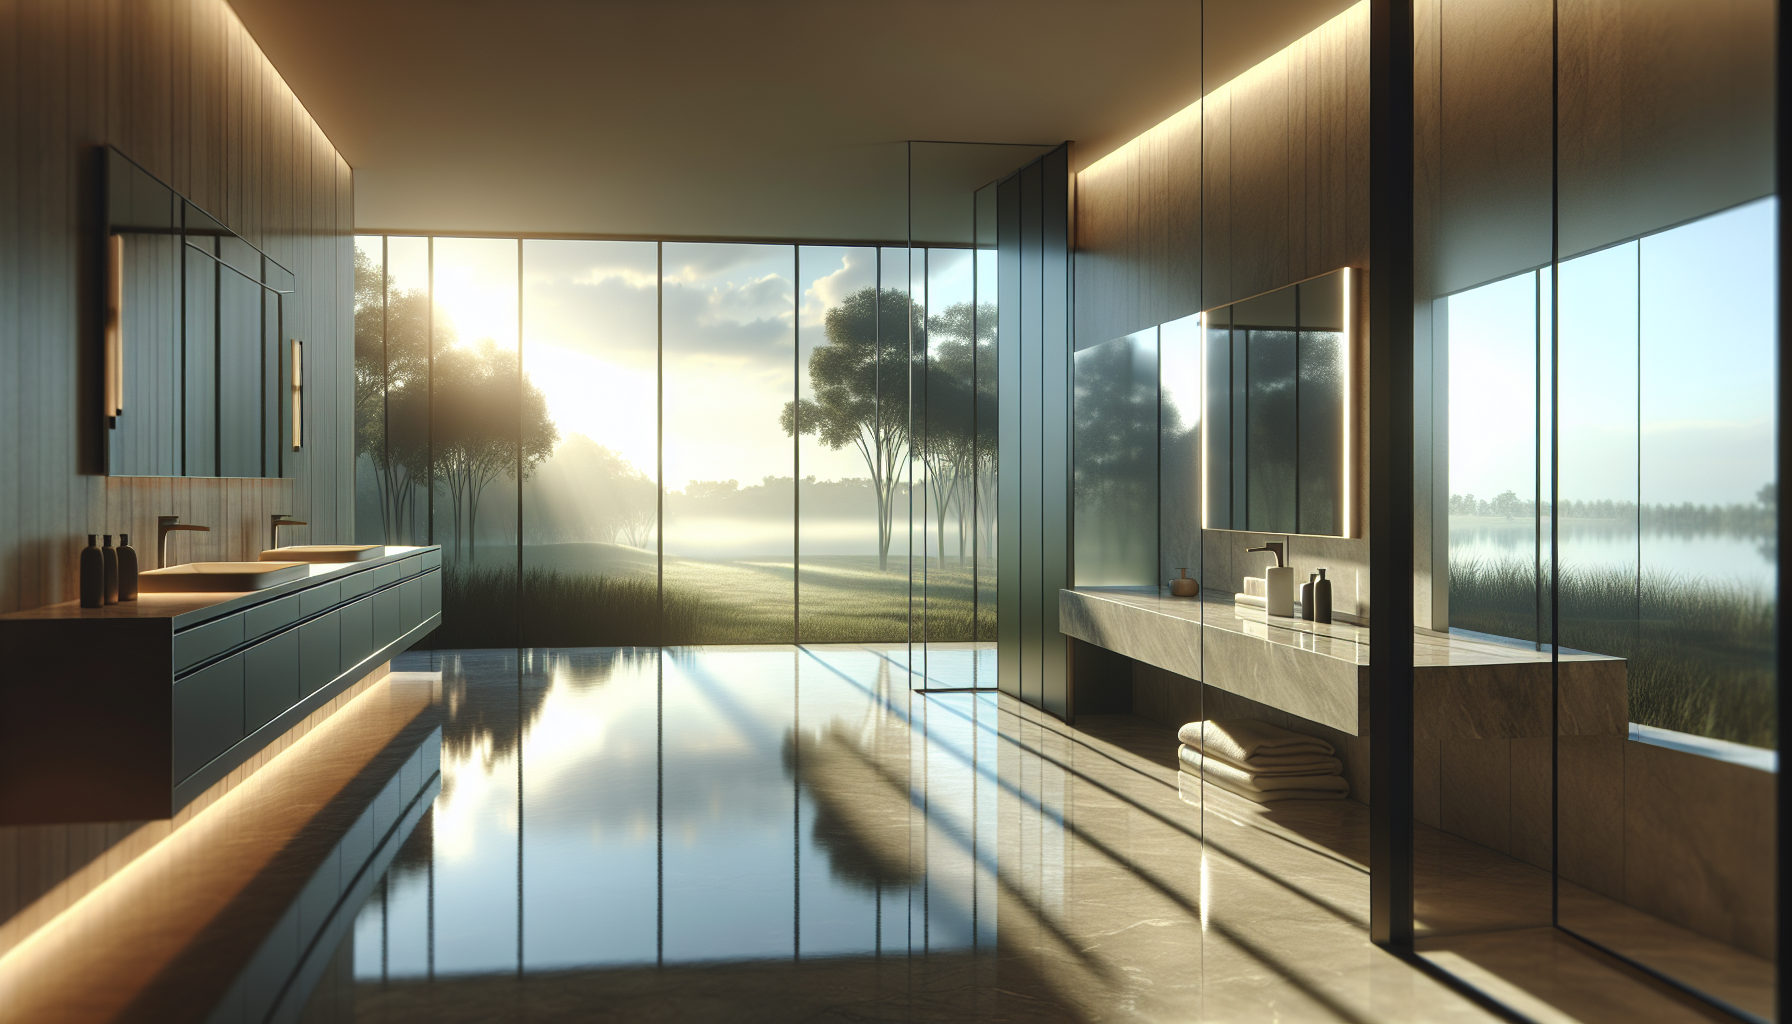 Natürlicher Lichteinfall im Badezimmer mit großen Fenstern und reflektierenden Oberflächen